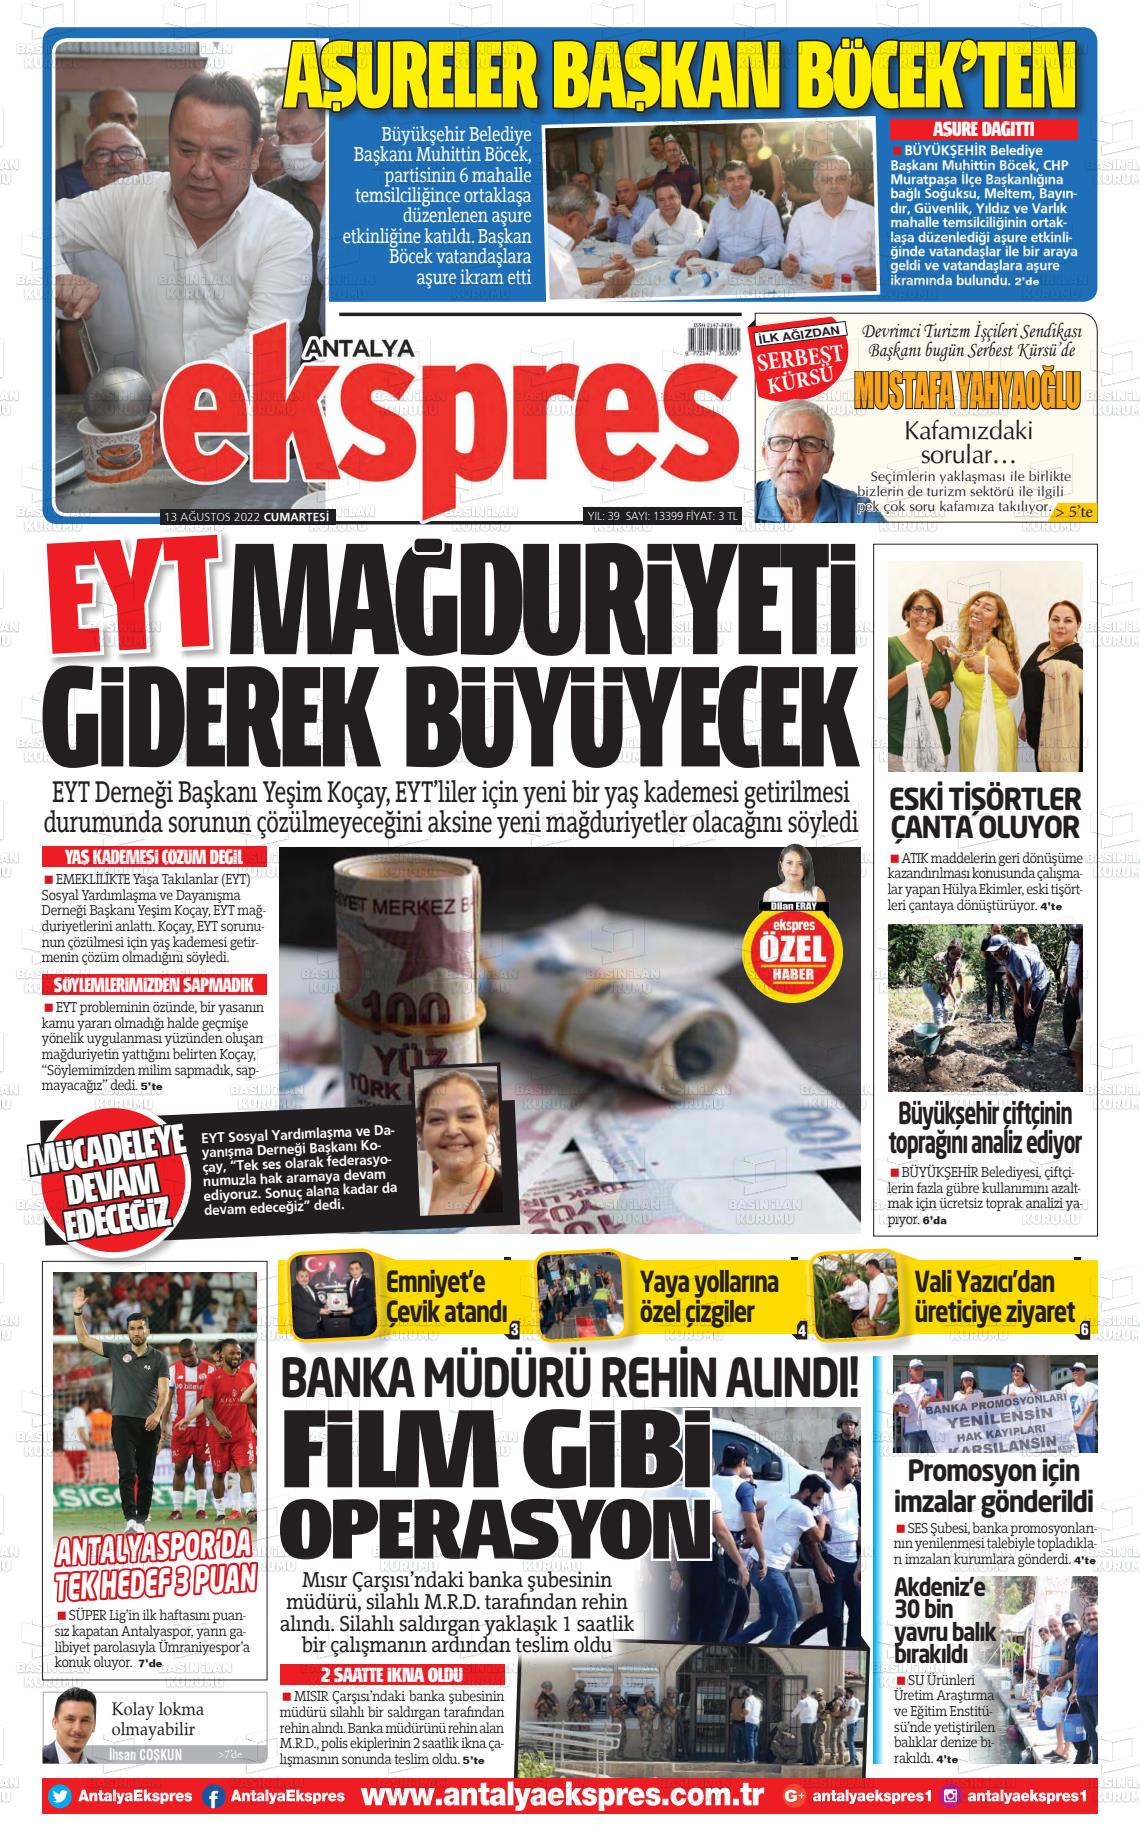 13 Ağustos 2022 Antalya Ekspres Gazete Manşeti